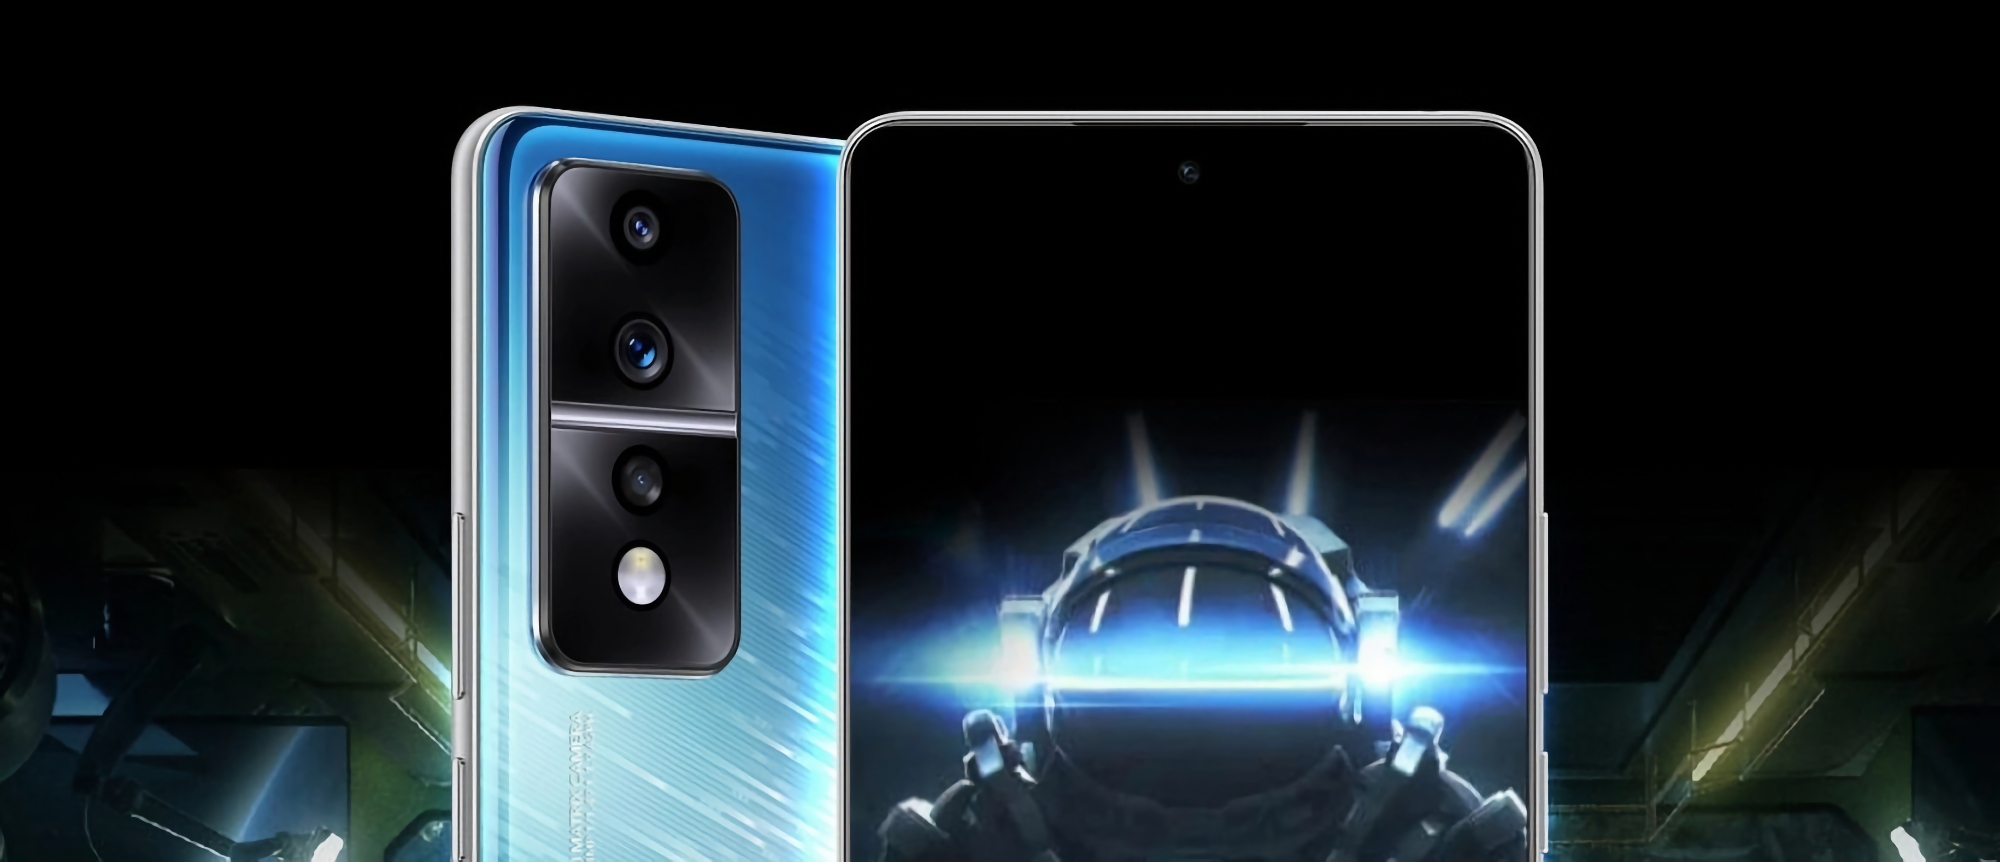 El smartphone gaming Honor 80 GT tendrá una cámara de 54 MP, pantalla OLED de 120 Hz, chip Snapdragon 8+ Gen 1 y un precio de unos 430 dólares